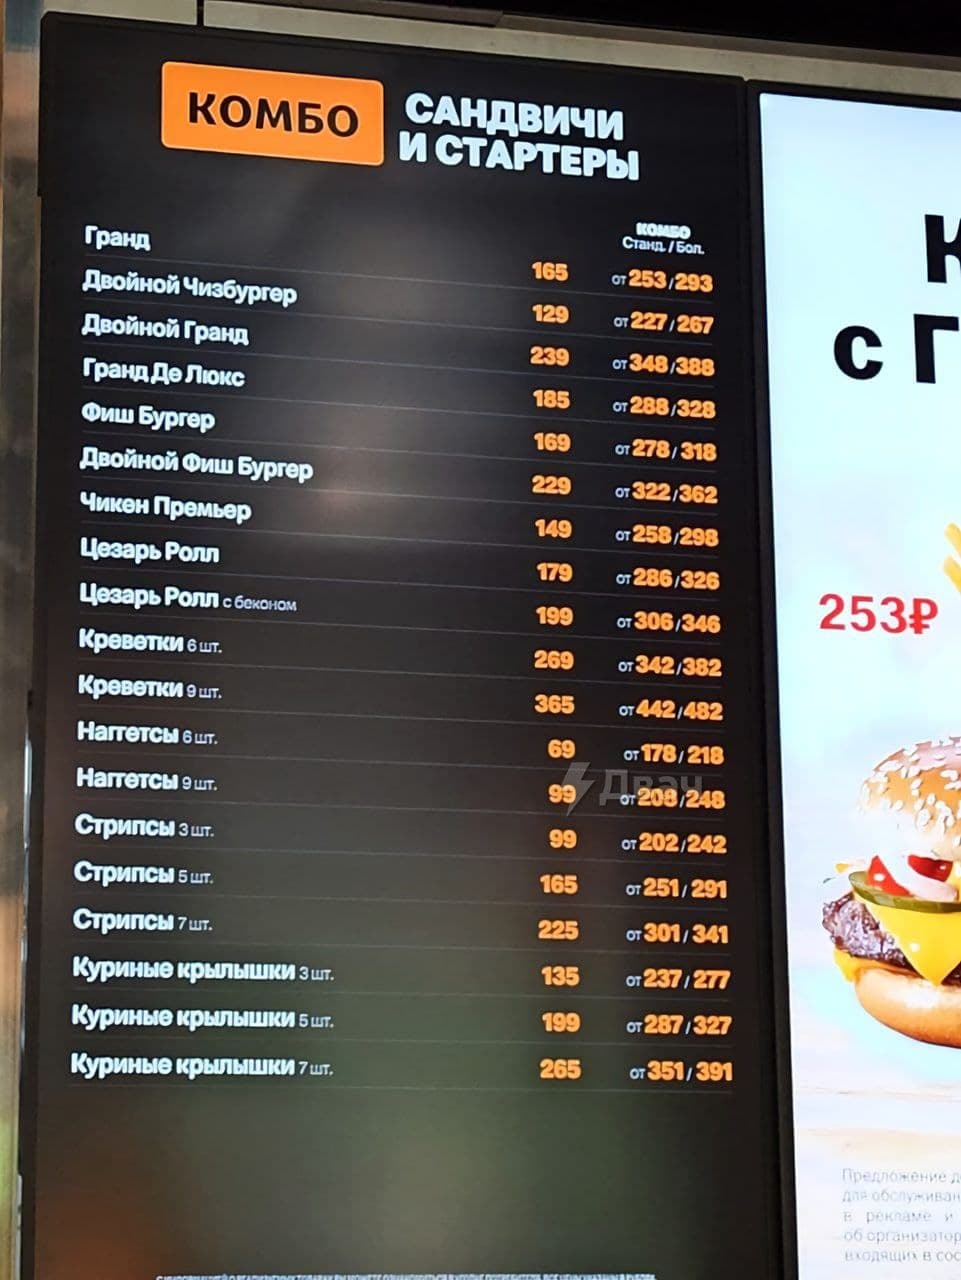 К праздничку. В Москве открыли "русский McDonald's" со смешным названием и ворованными соусами (ФОТО, ВИДЕО) 7